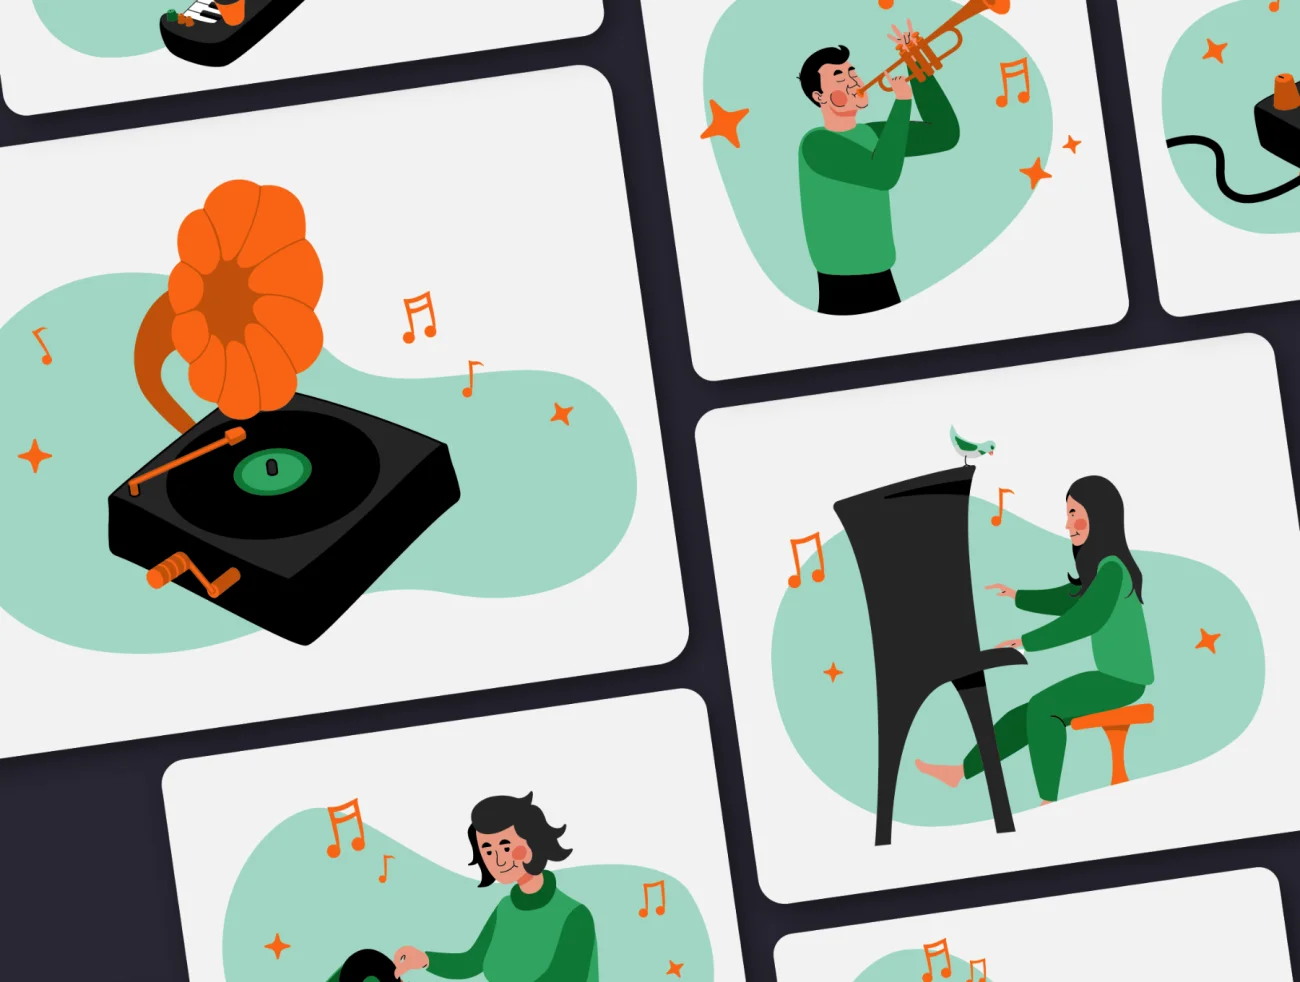 12款现代扁平化人物演奏音乐插图素材 Music illustrations插图3